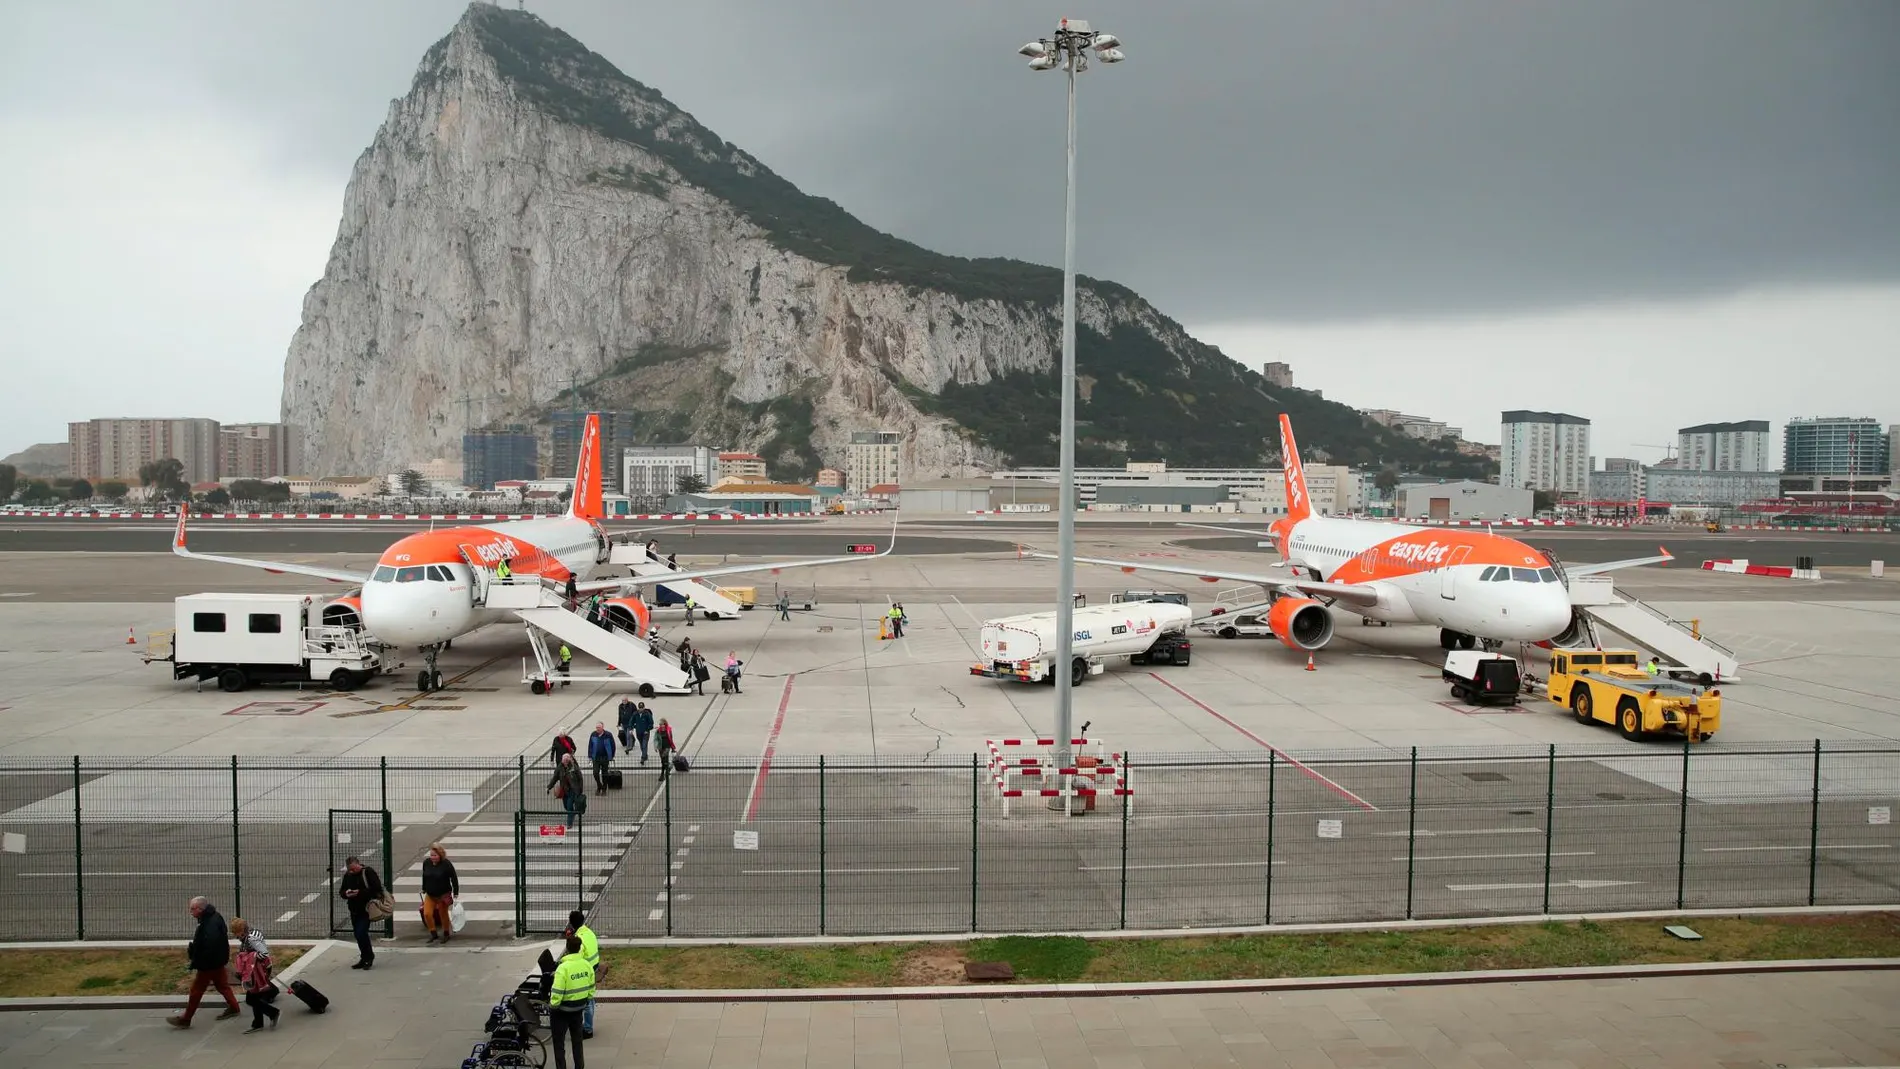 Aeropuerto de Gibraltar, construido en territorio ocupado militarmente por Reino Unido